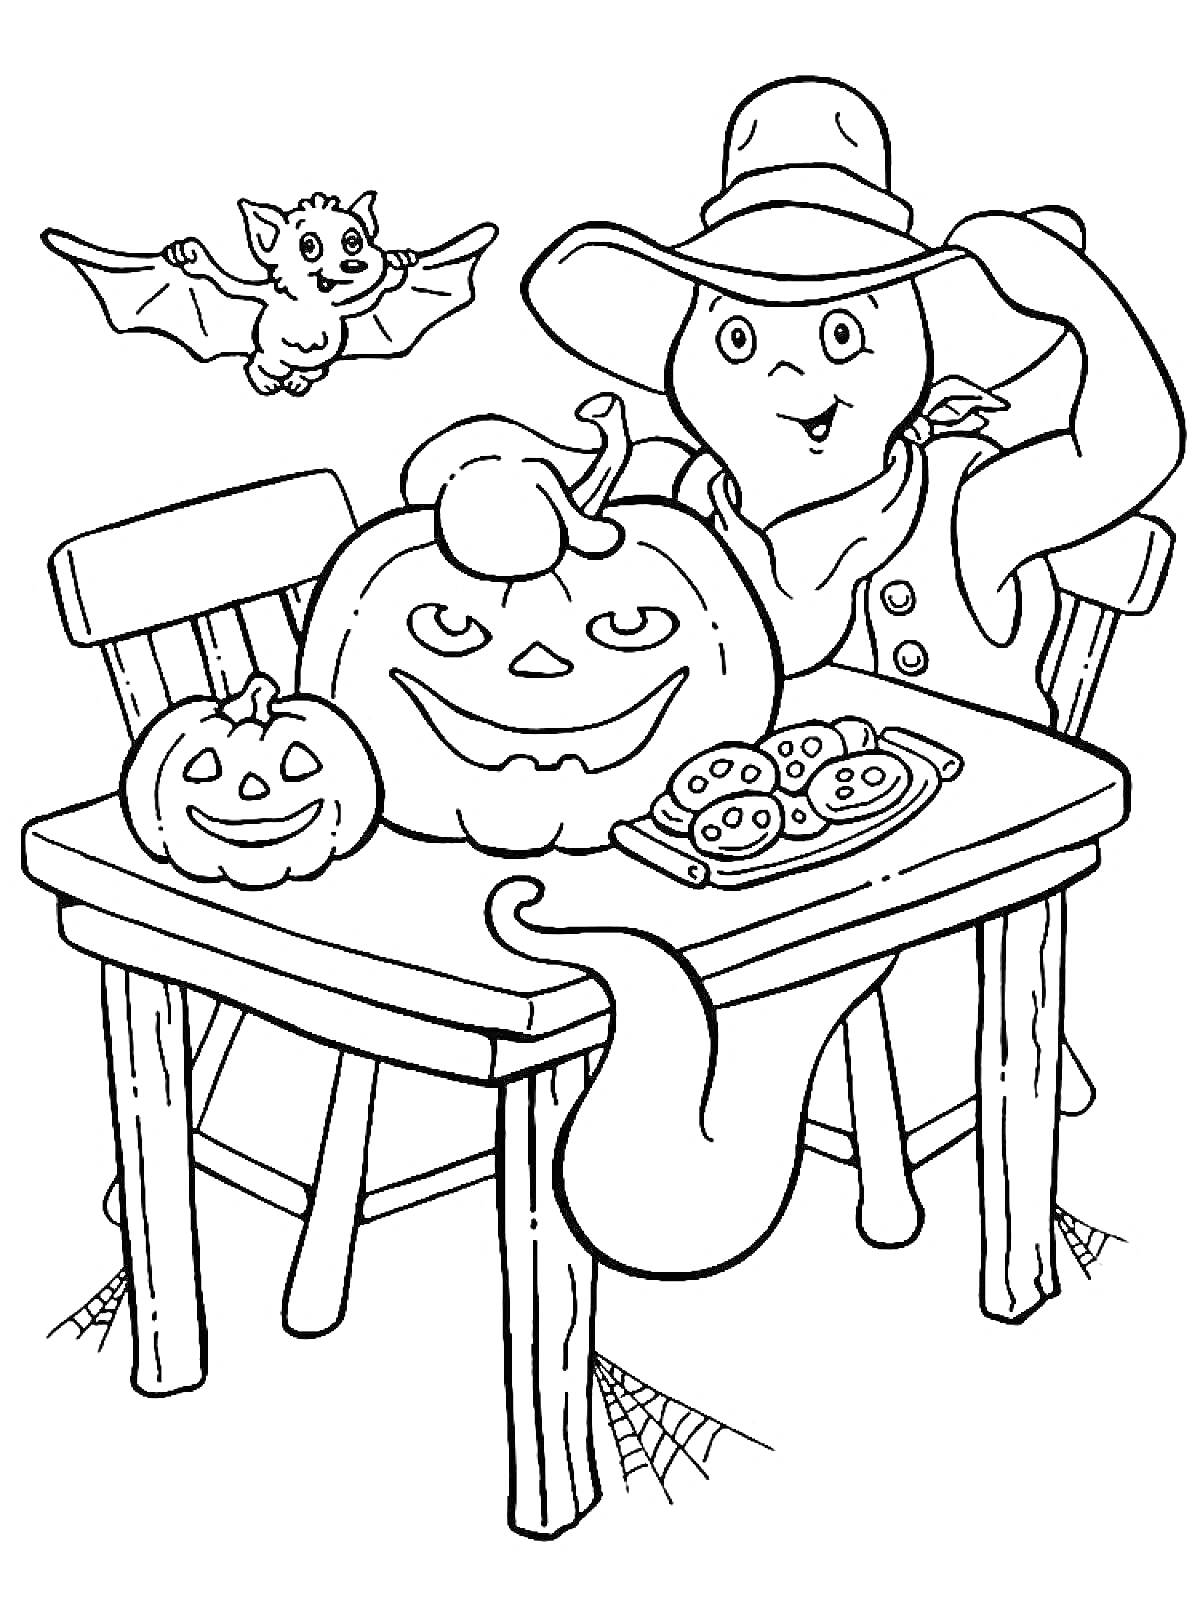 Раскраска Призрак в шляпе с тыквой и летучей мышью на столе для Хэллоуина